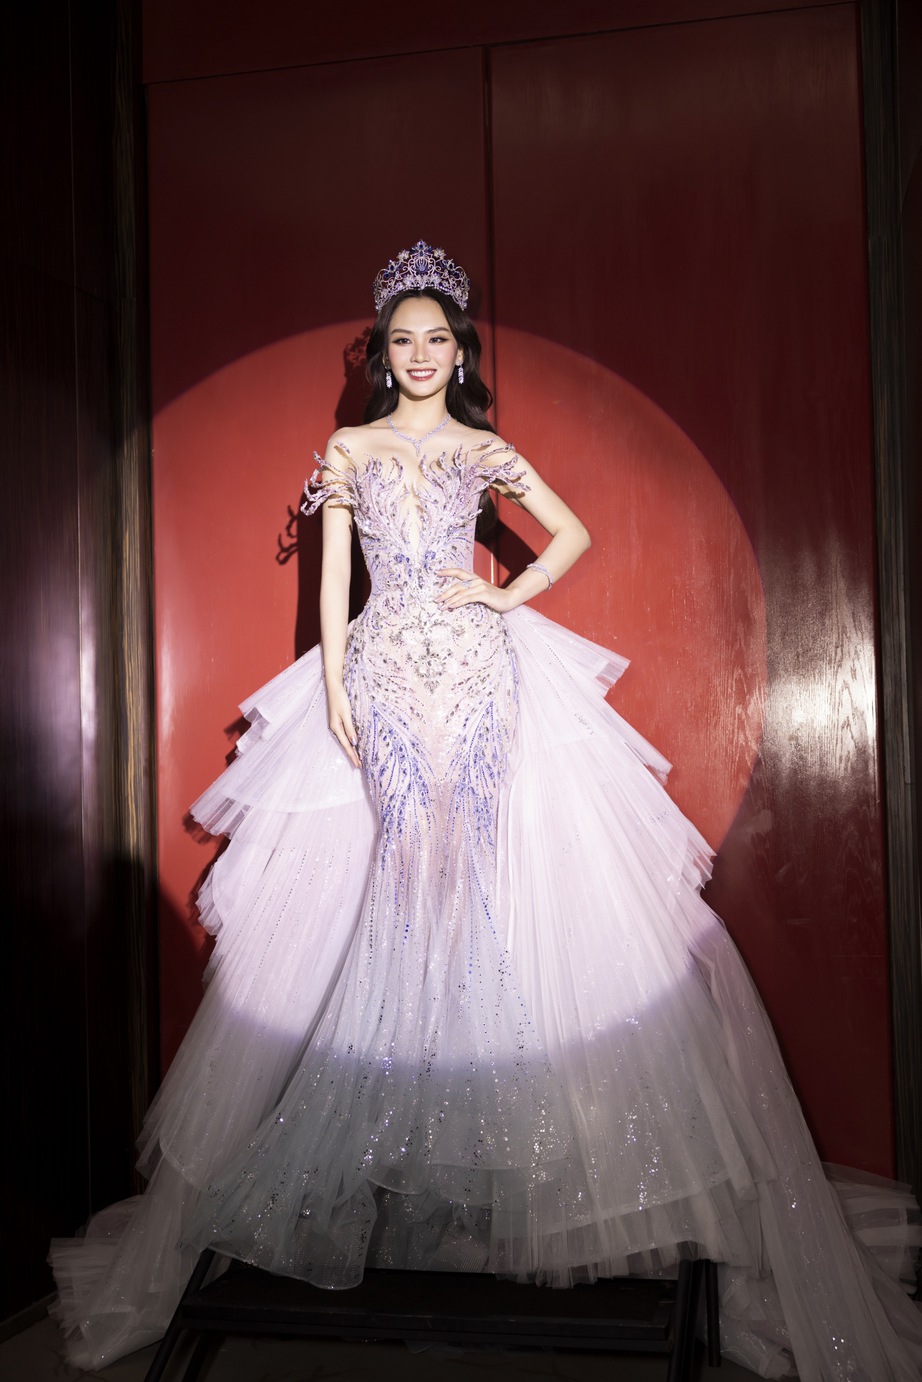 Hoa hậu Mai Phương chính thức nhận sash Miss World Vietnam, chinh chiến tại Miss World 71- Ảnh 3.